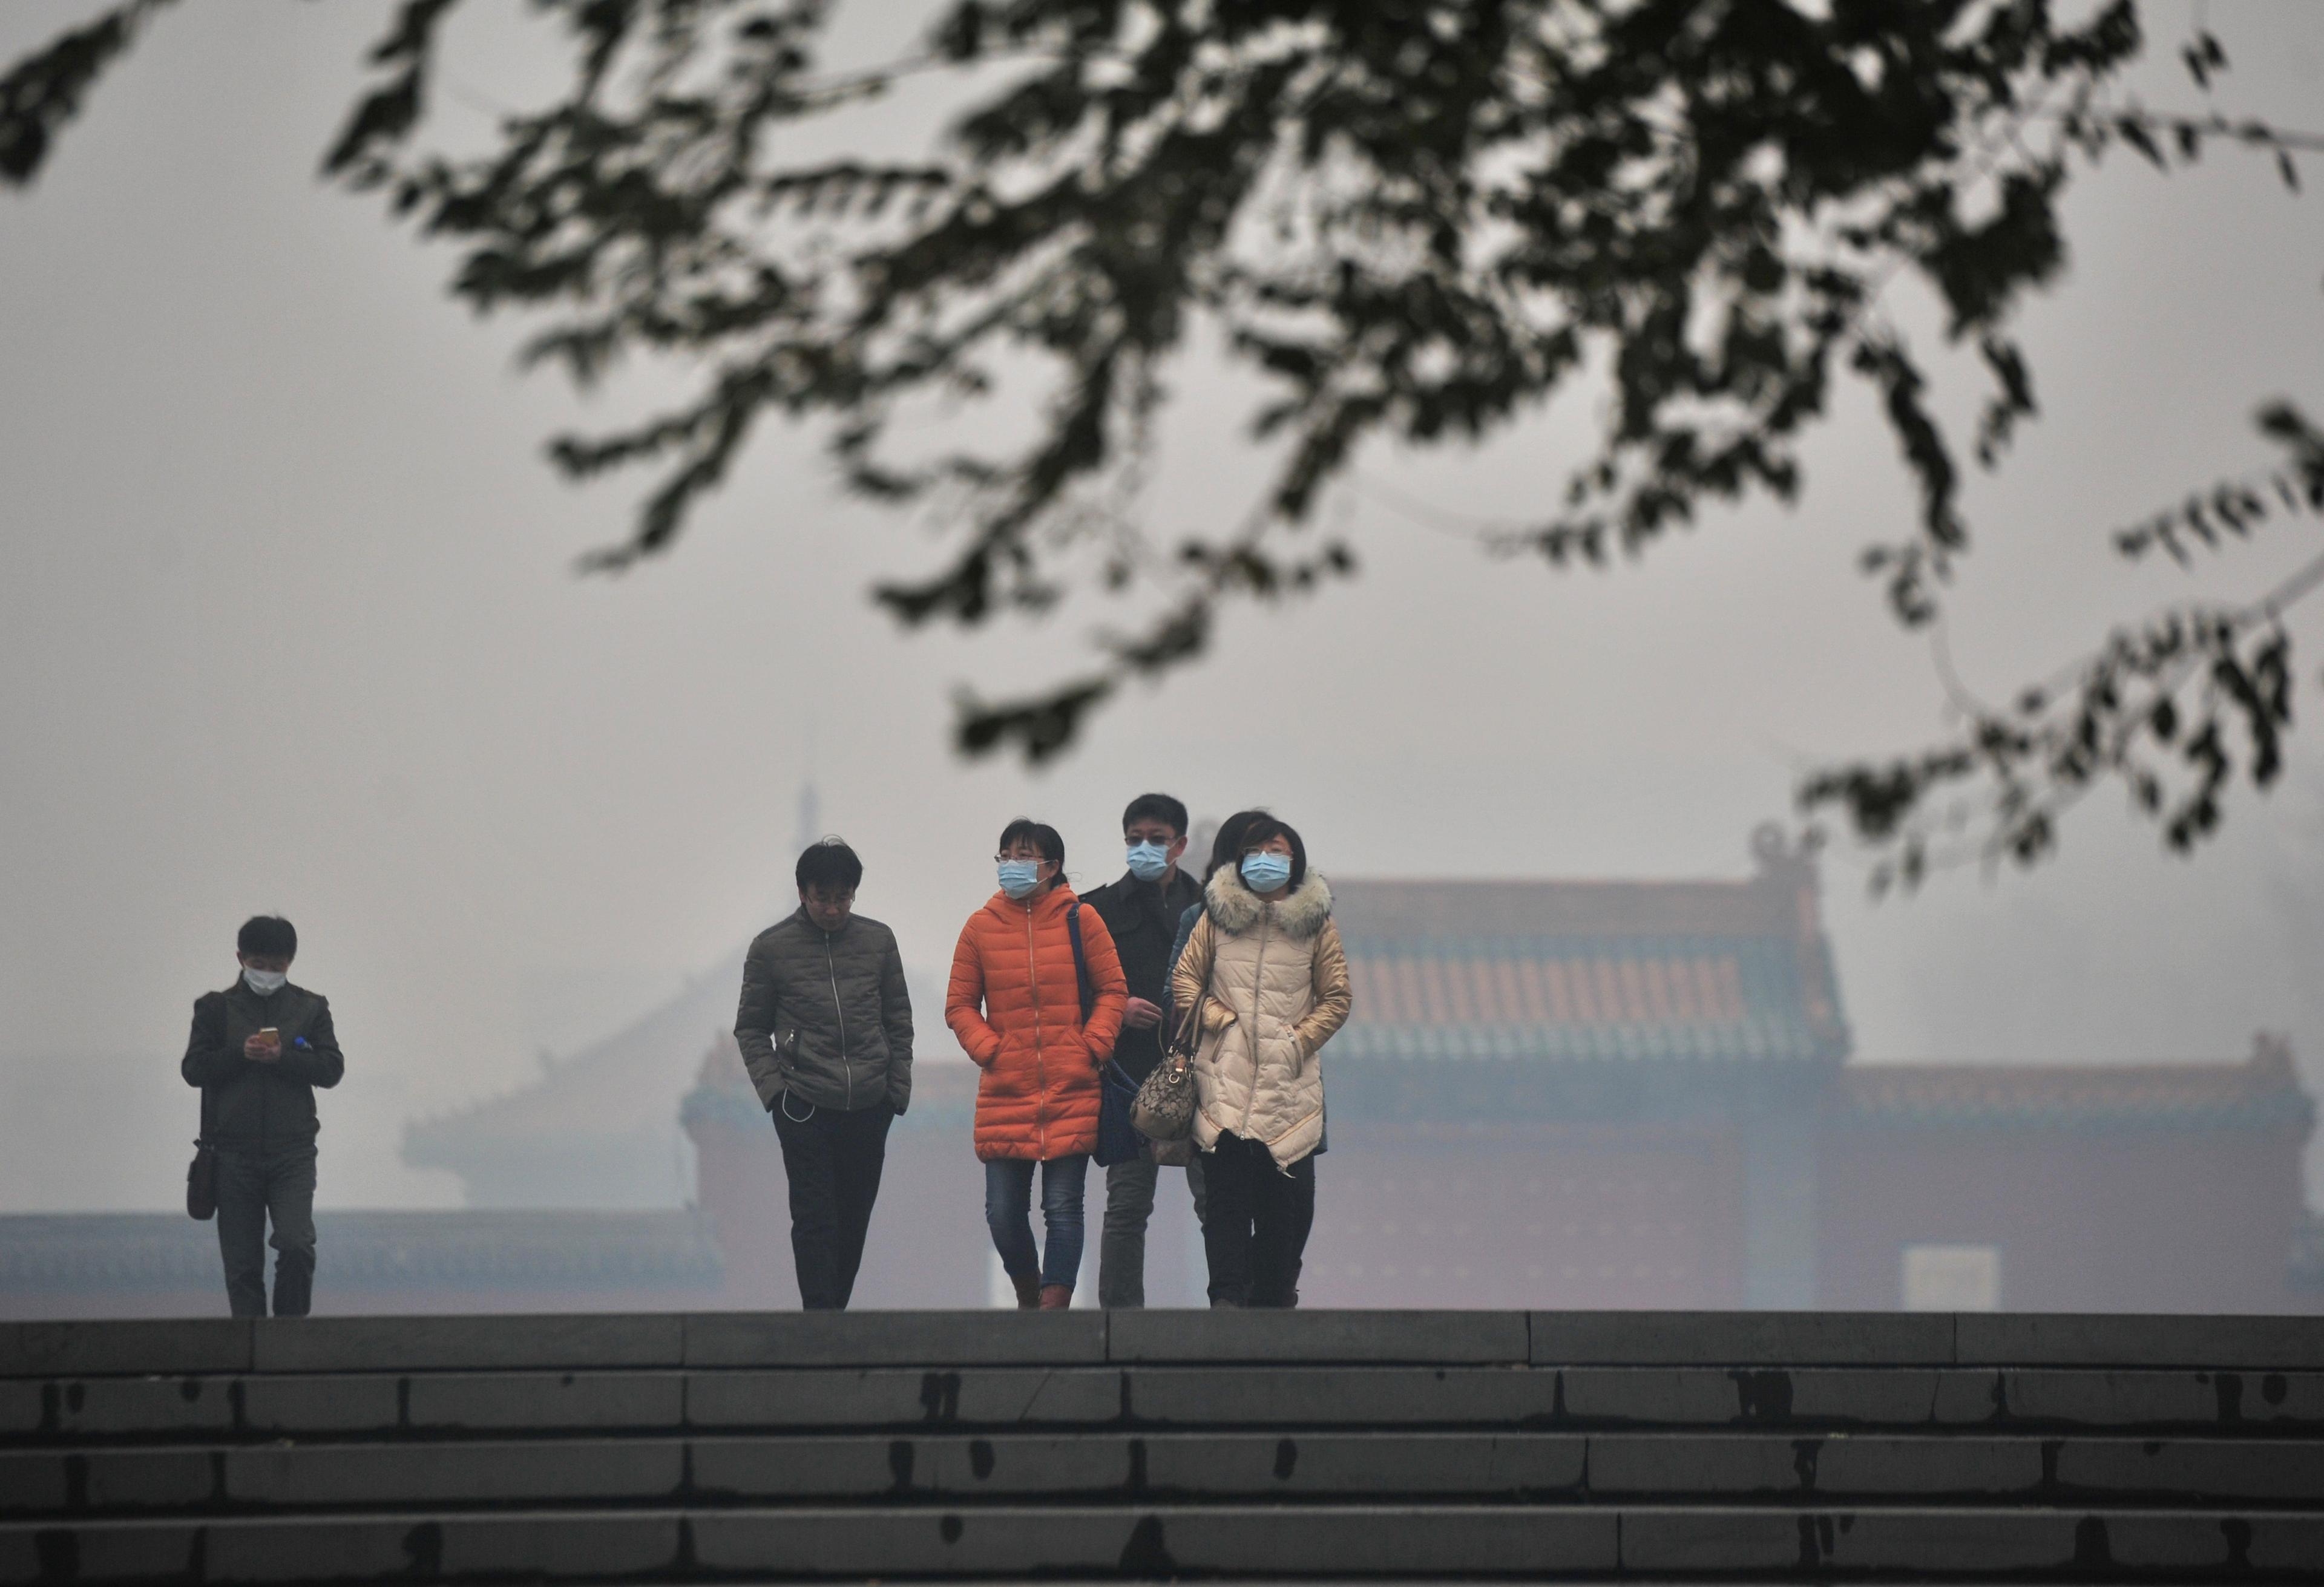 Invånare bär masker bland smogen vid Mukdenpalatset i Shenyang, nordöstra Kina, den 8 november 2015. Tung smog drog in över Kina där partikelhalten PM2,5 var omkring 56 gånger högre än vad WHO anser vara farligt. (Foto: ChinaFotoPress /ChinaFotoPress via Getty Images)